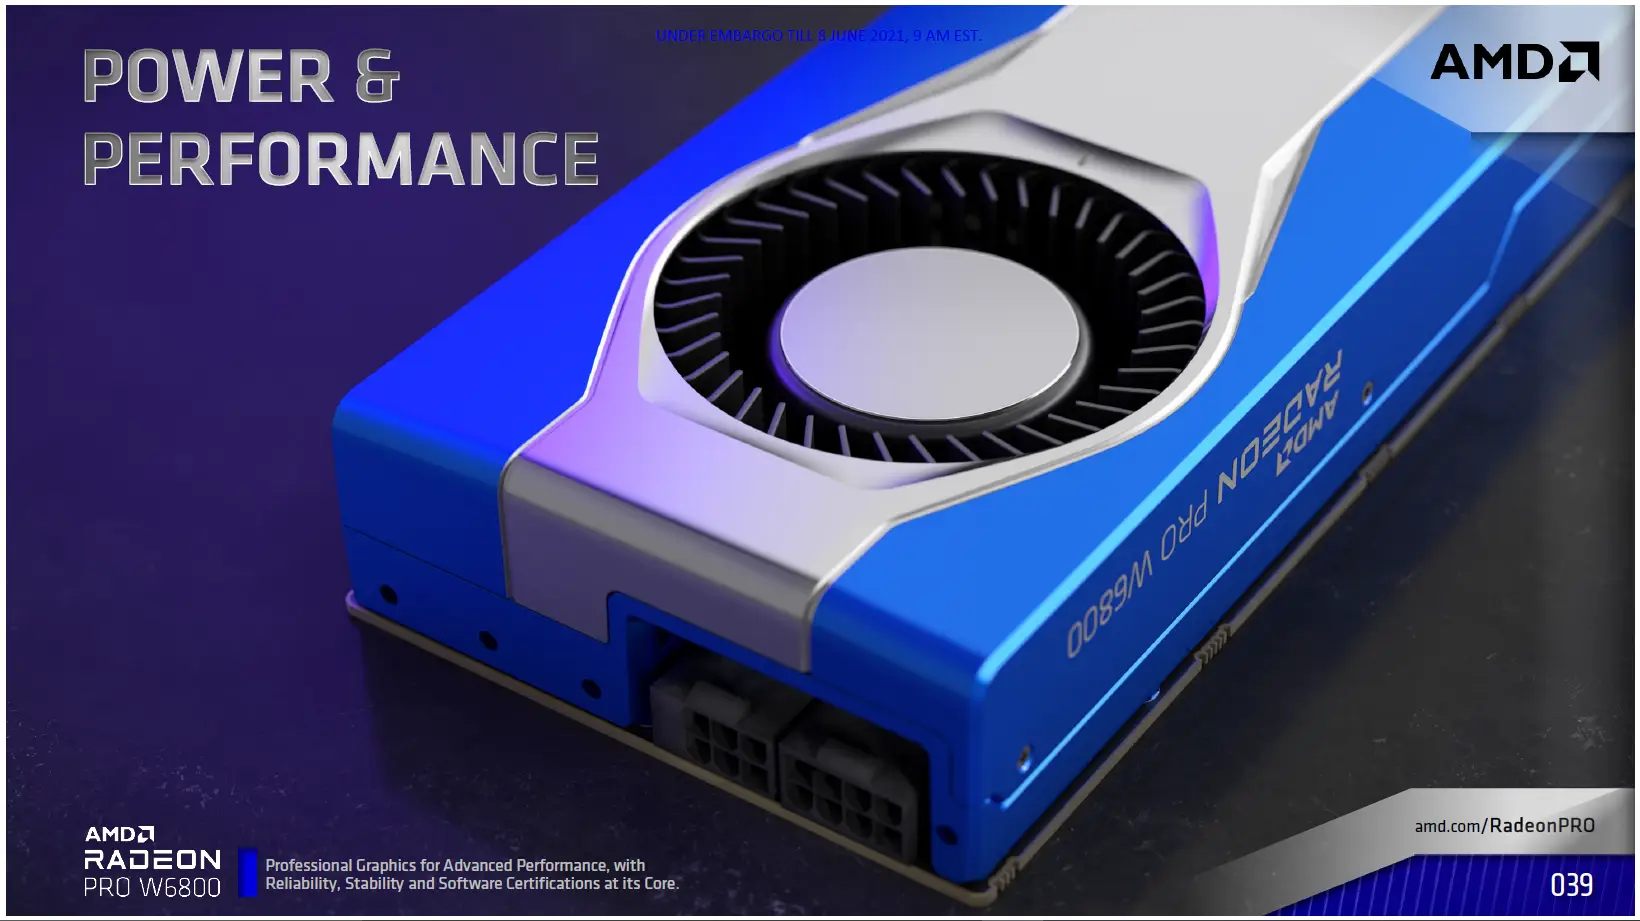  AMD เปิดตัวกราฟิกการ์ดเวิร์คสเตชั่นซีรีย์ใหม่ AMD Radeon PRO W6000 ใช้สถาปัตยกรรม AMD RDNA 2 หน่วยความจำขนาด 32GB เพื่อรองรับเวิร์คโหลดงานด้านสถาปัตยกรรม การออกแบบ และงานด้านสื่อต่างๆ